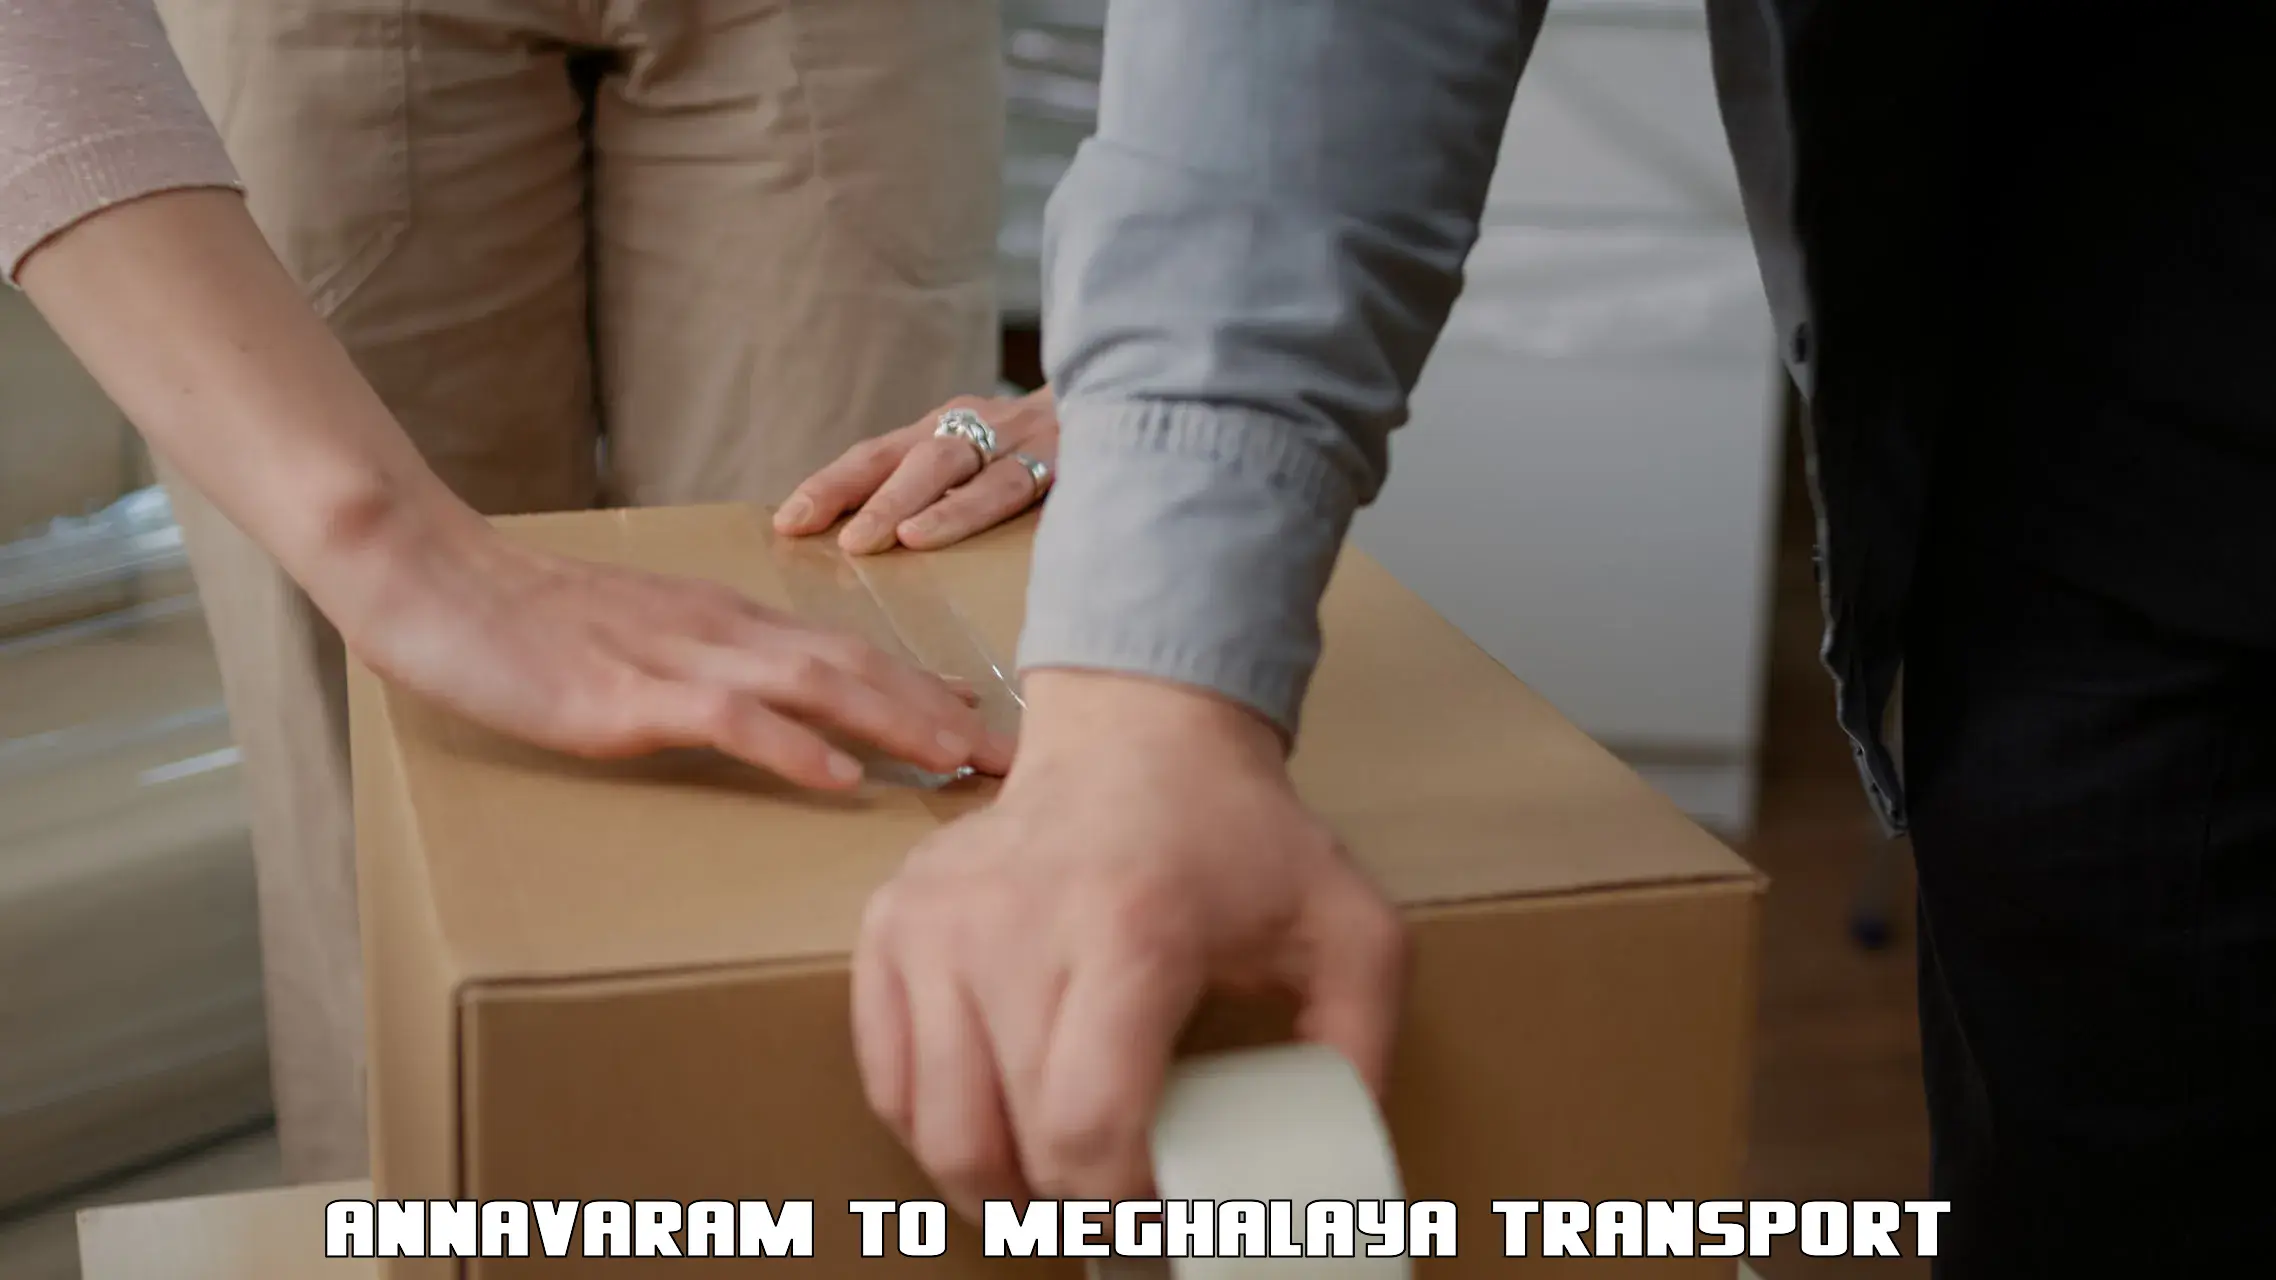 Transportation services Annavaram to Meghalaya